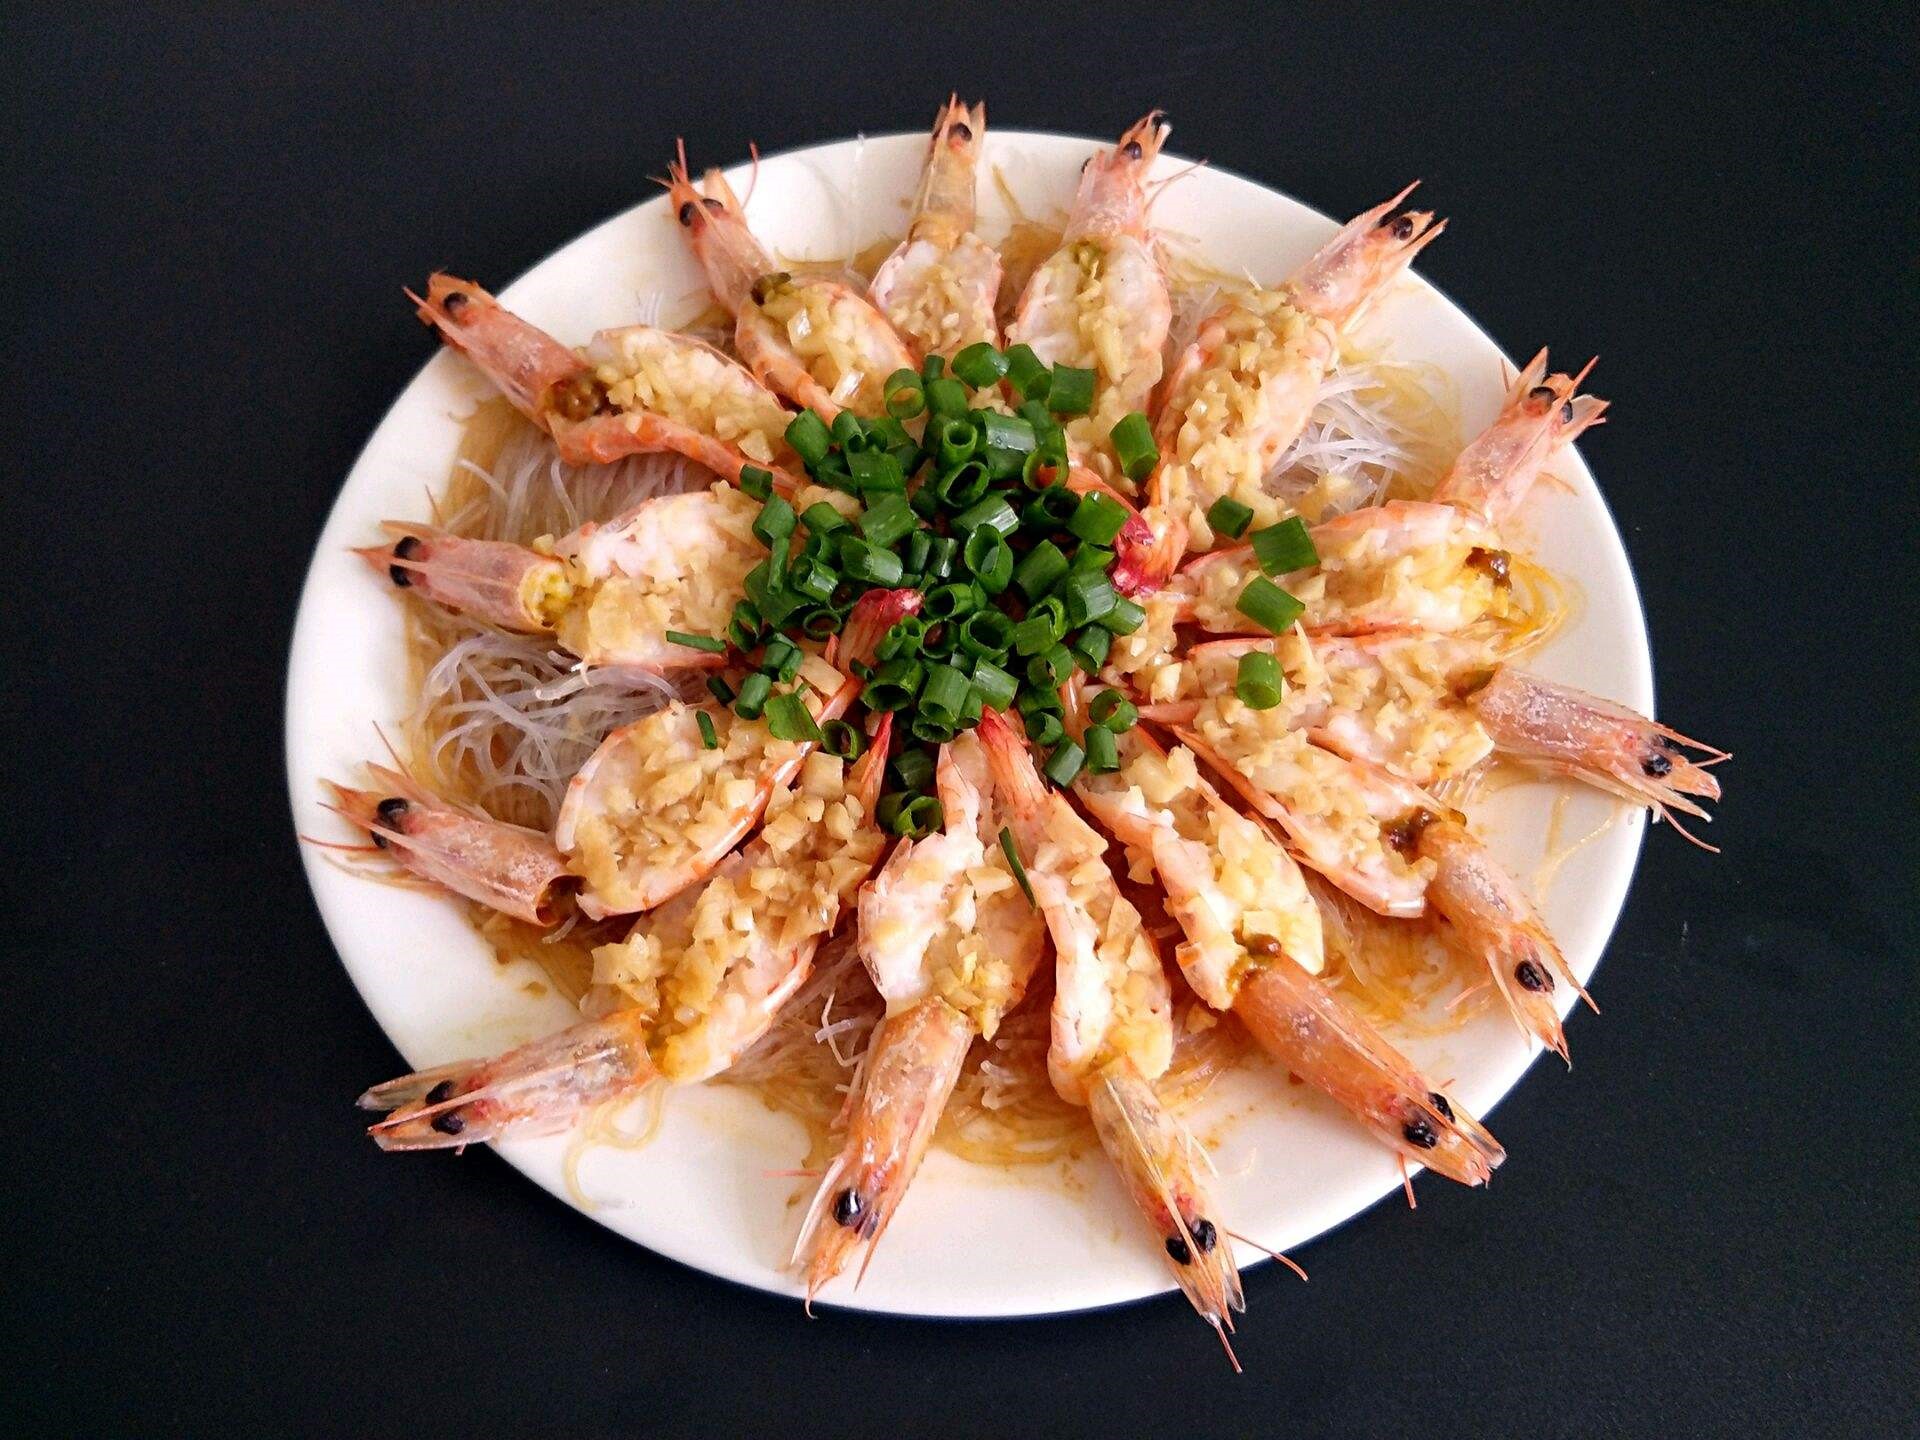 蒜蓉粉丝虾,精致的海鲜做法,喜欢吃海鲜的千万别错过